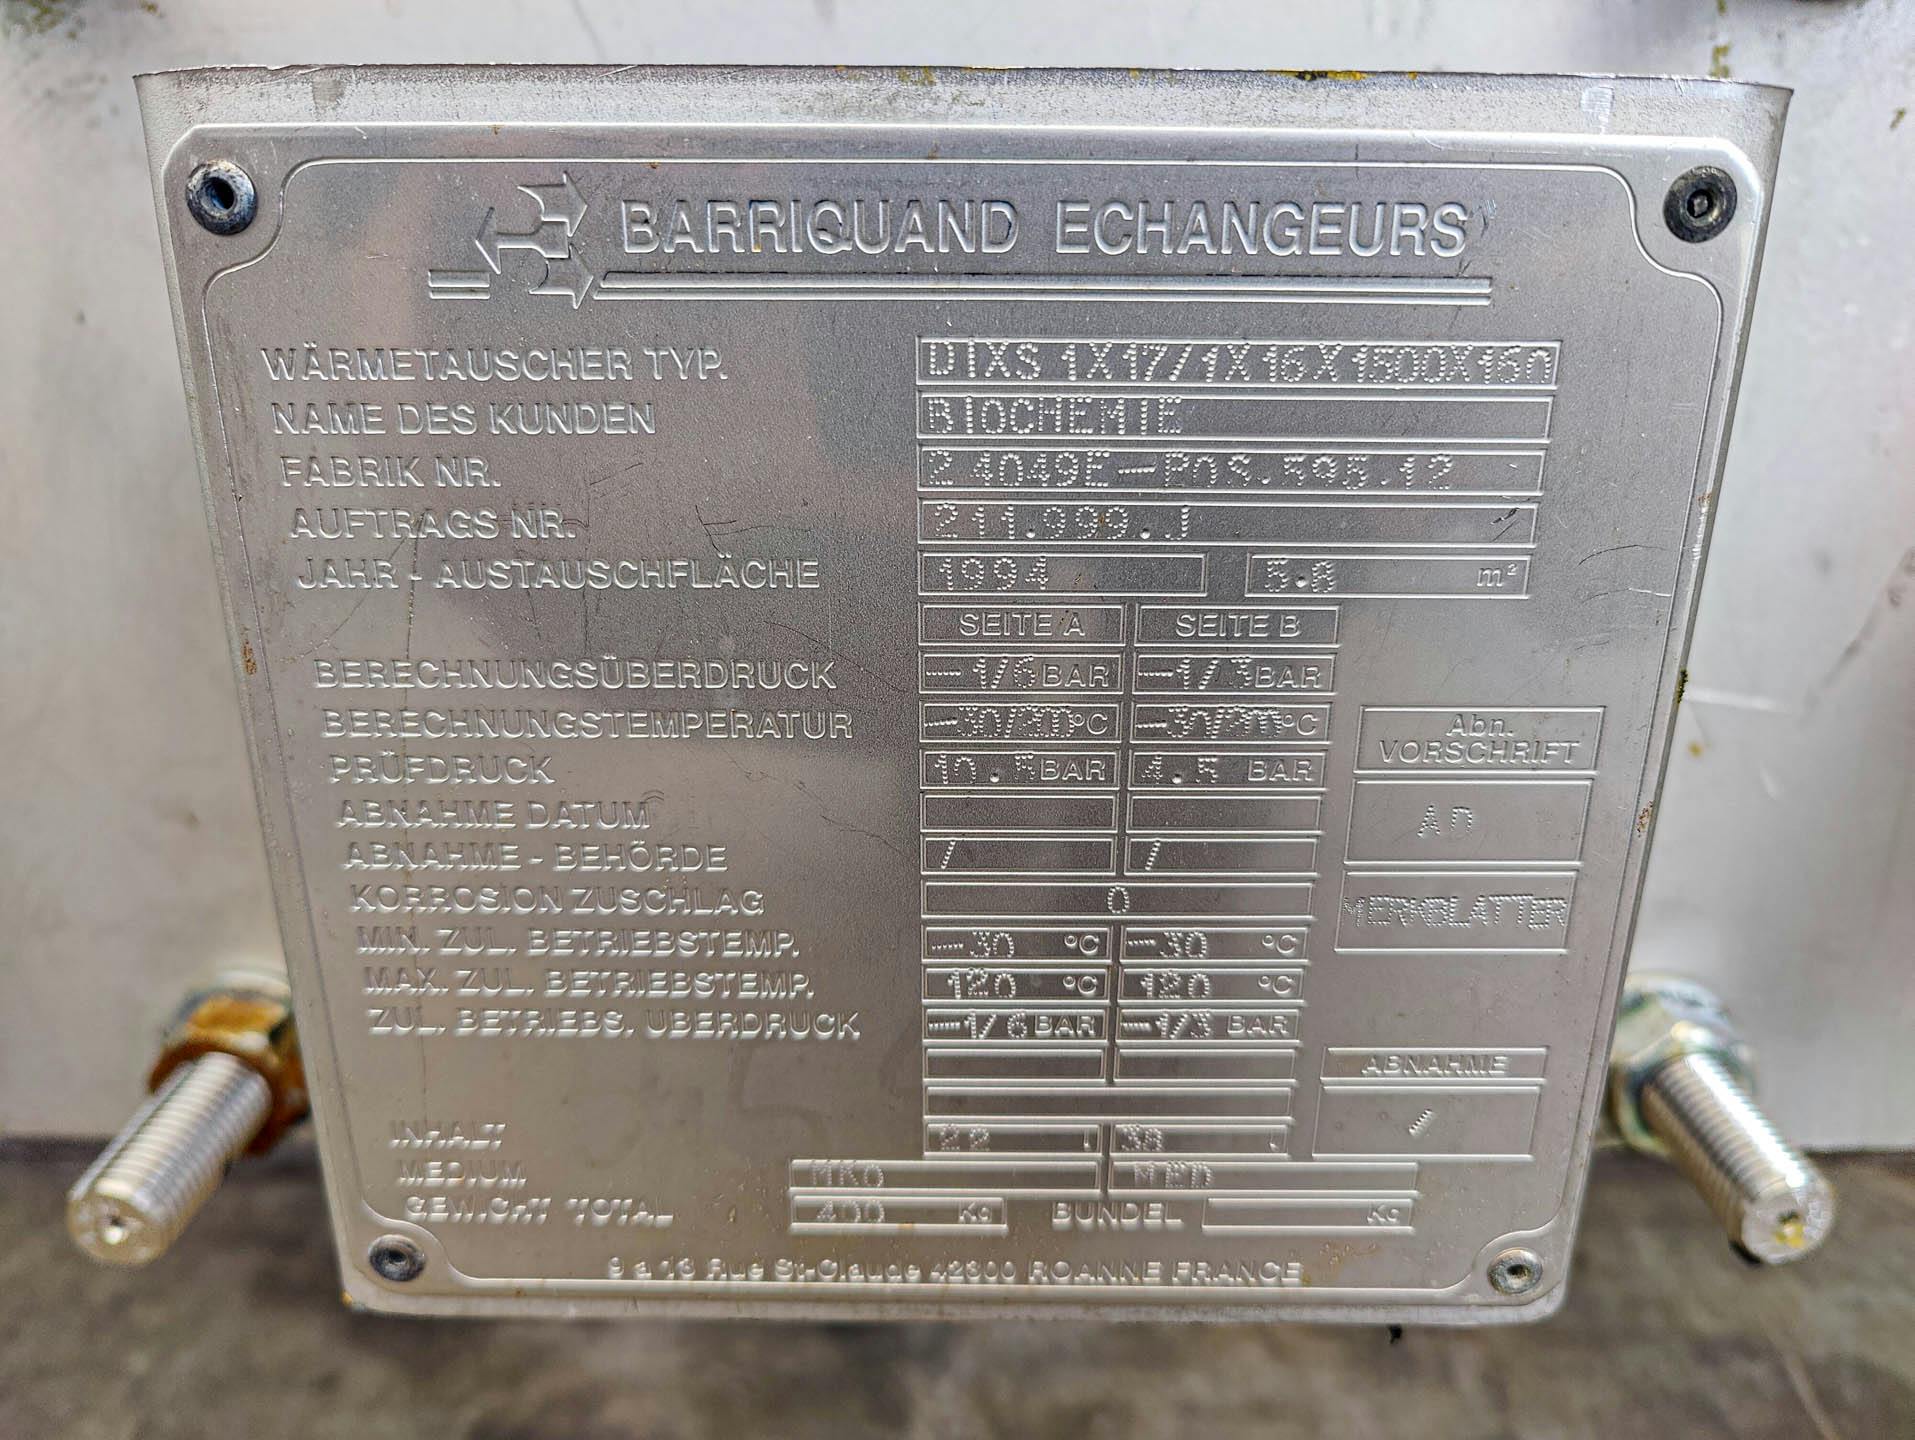 Barriquand Platular DIXS 1x17/1x16/1500/160 welded plate heat exchanger - Płytowe wymiennik ciepła - image 6